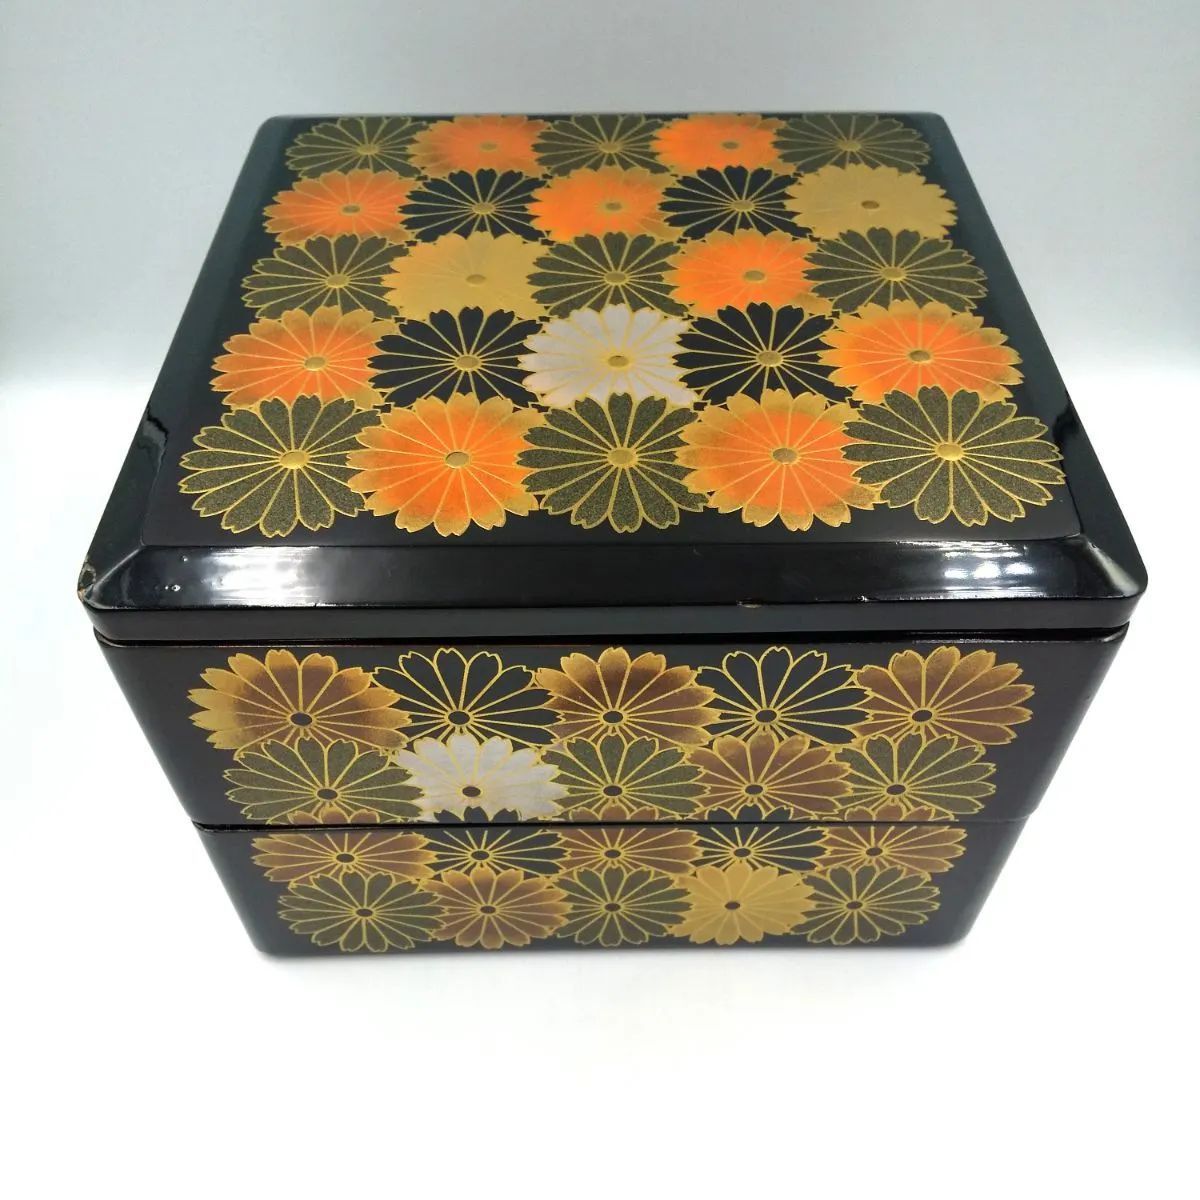 重箱 二段重 7.5寸 漆器 漆 菊模様 新品未使用